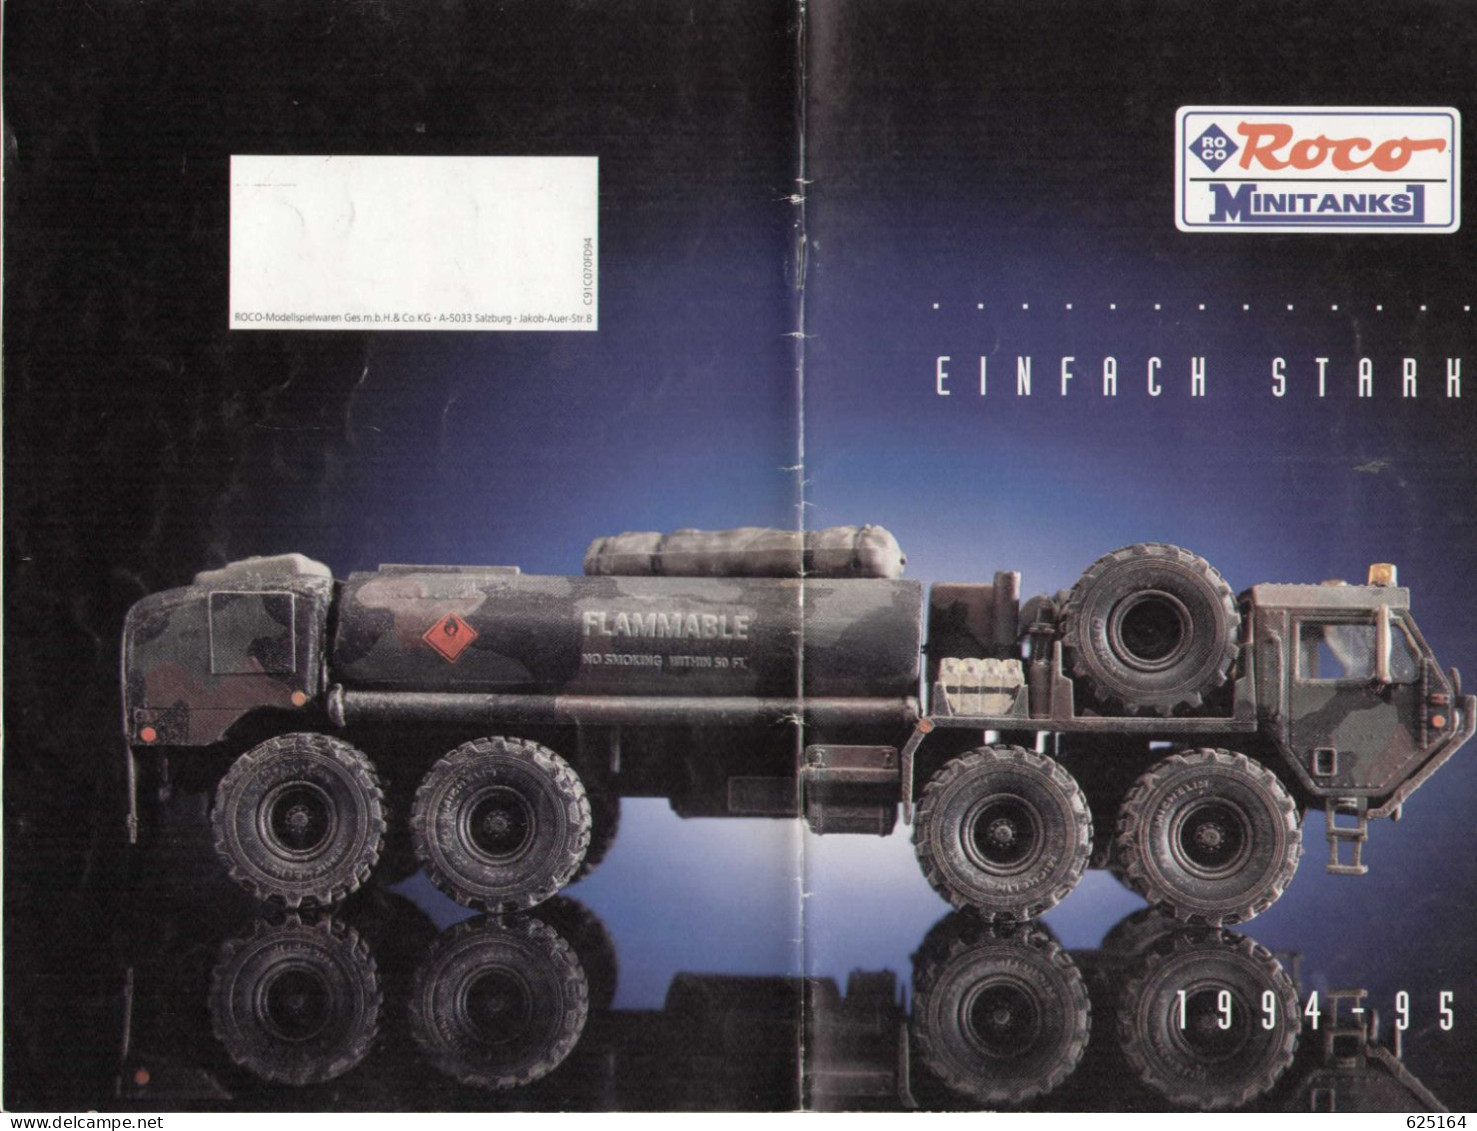 Catalogue ROCO Minitanks 1994-95 Einfach Starh - Deutsch